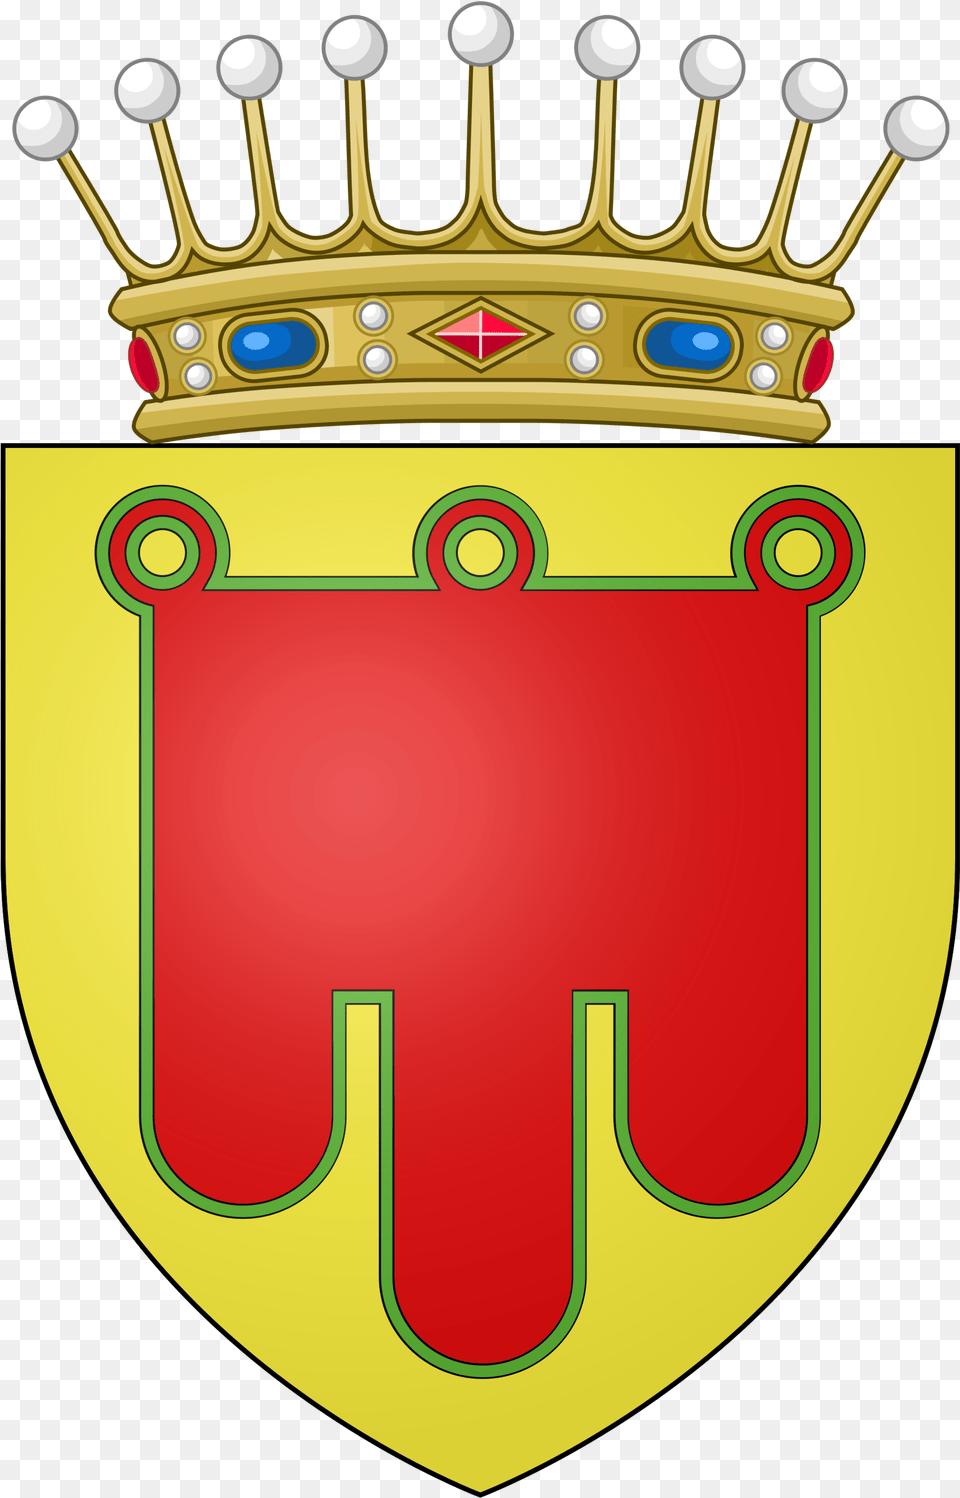 Auvergne Counts Icon Royal Crown, Armor, Festival, Hanukkah Menorah, Shield Png